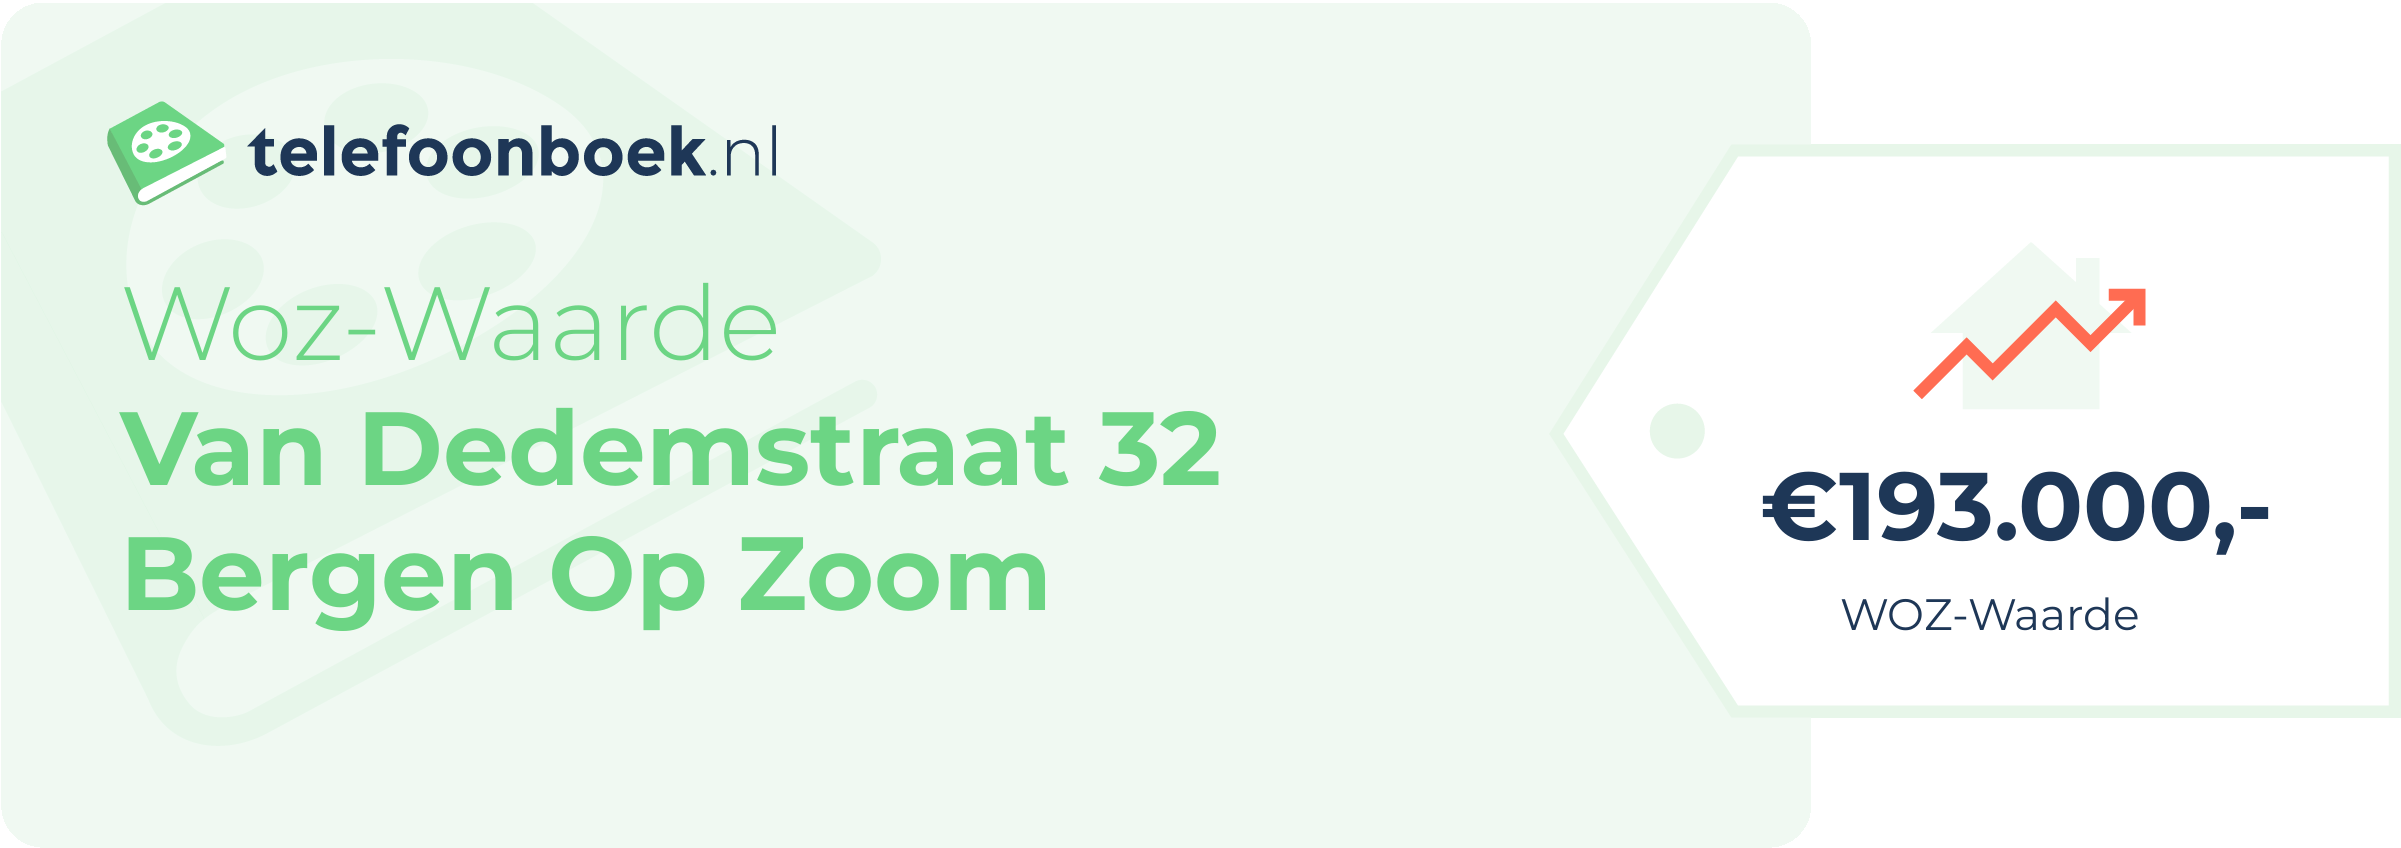 WOZ-waarde Van Dedemstraat 32 Bergen Op Zoom